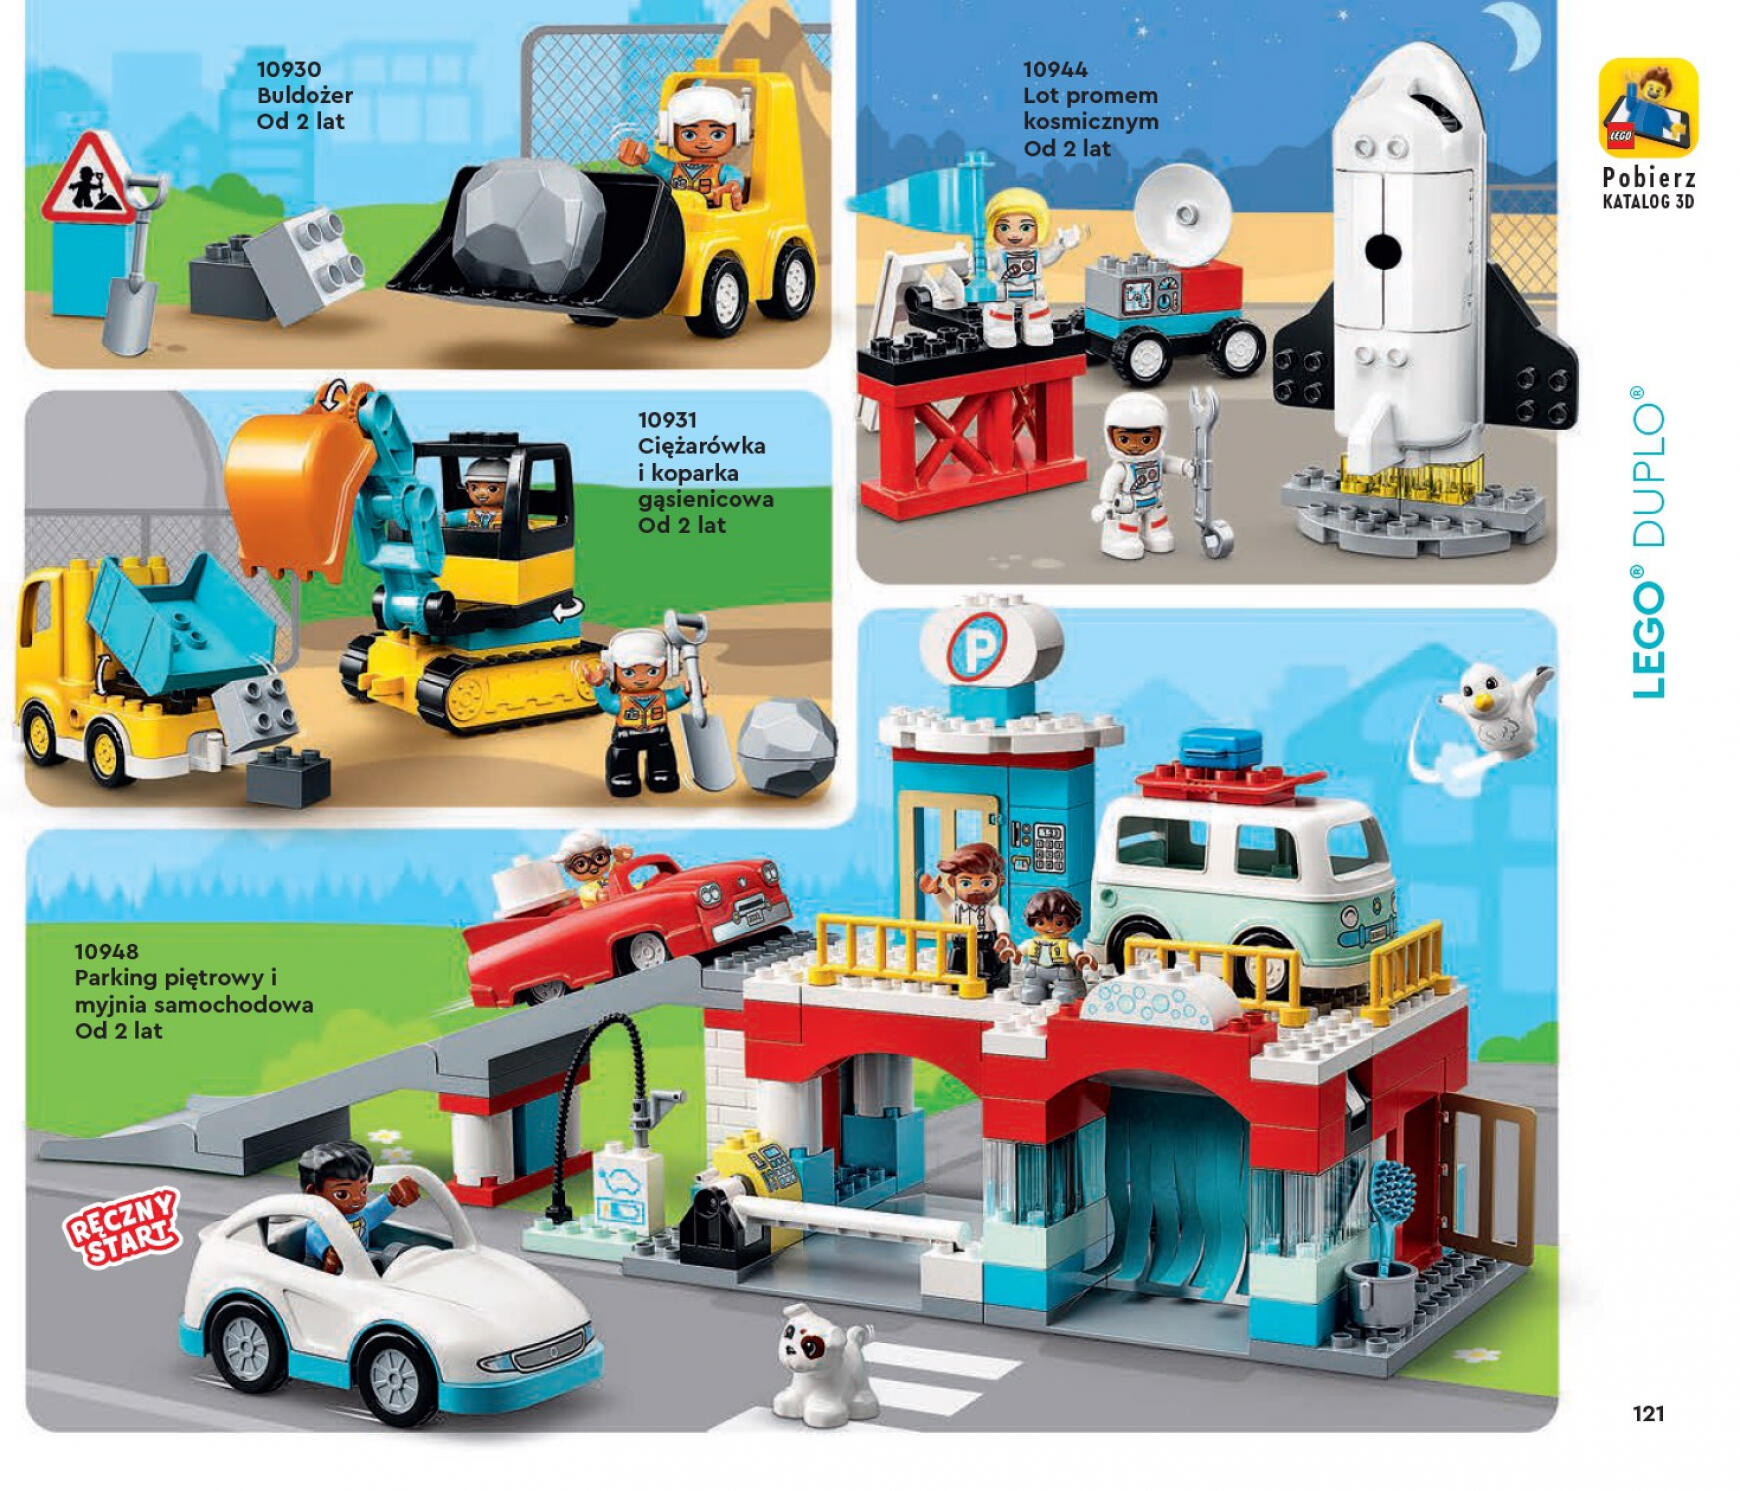 lego - Gazetka Lego od niedzieli 01.01. - page: 121